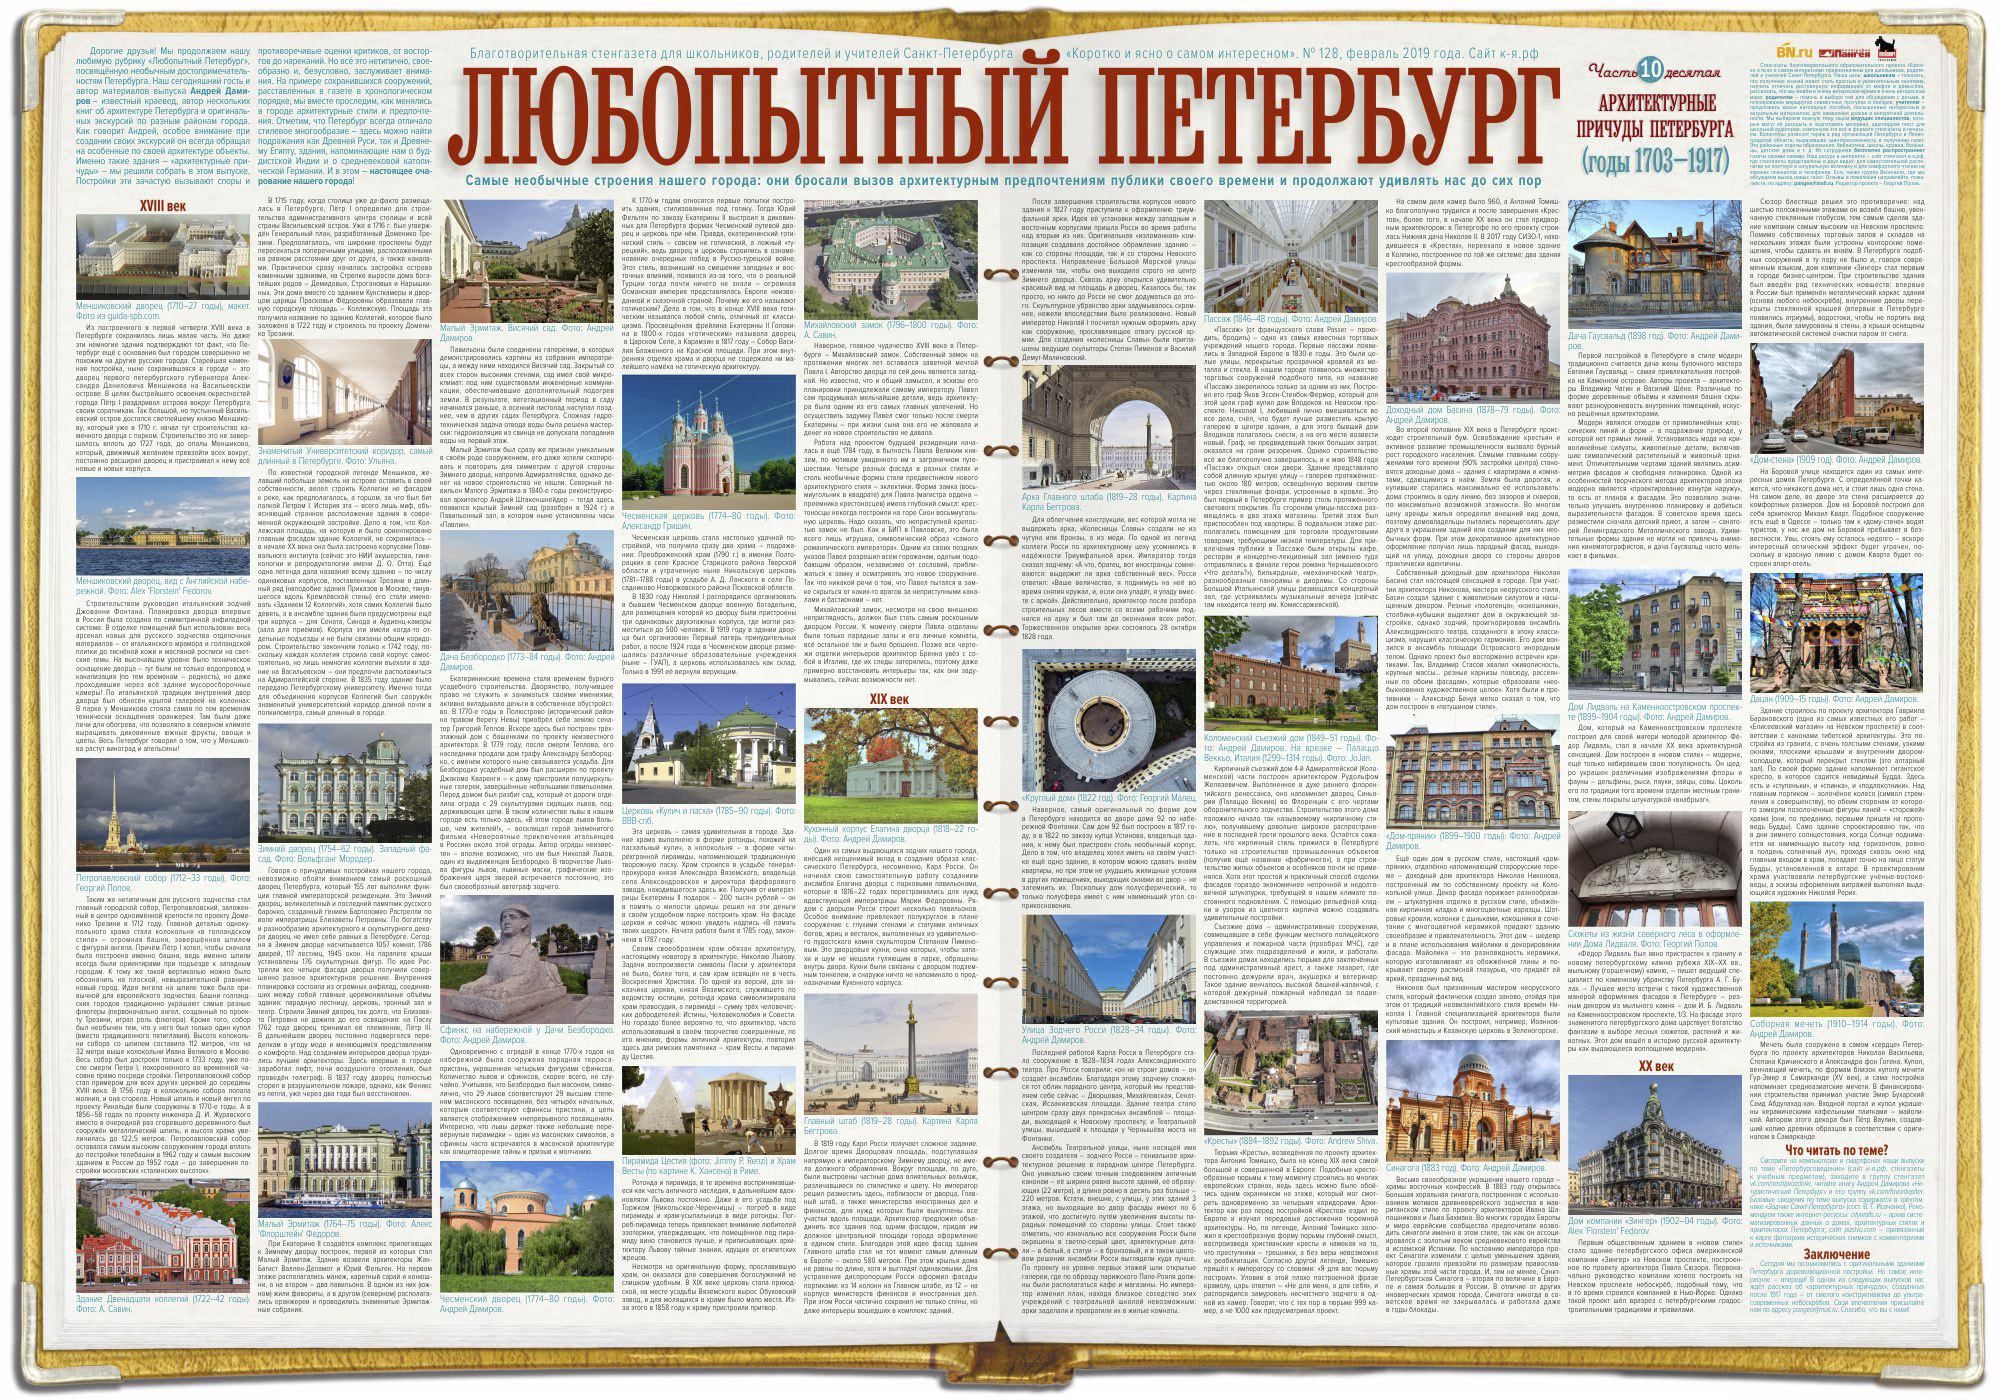 Архитектурные причуды Петербурга, 1703–1917 годы